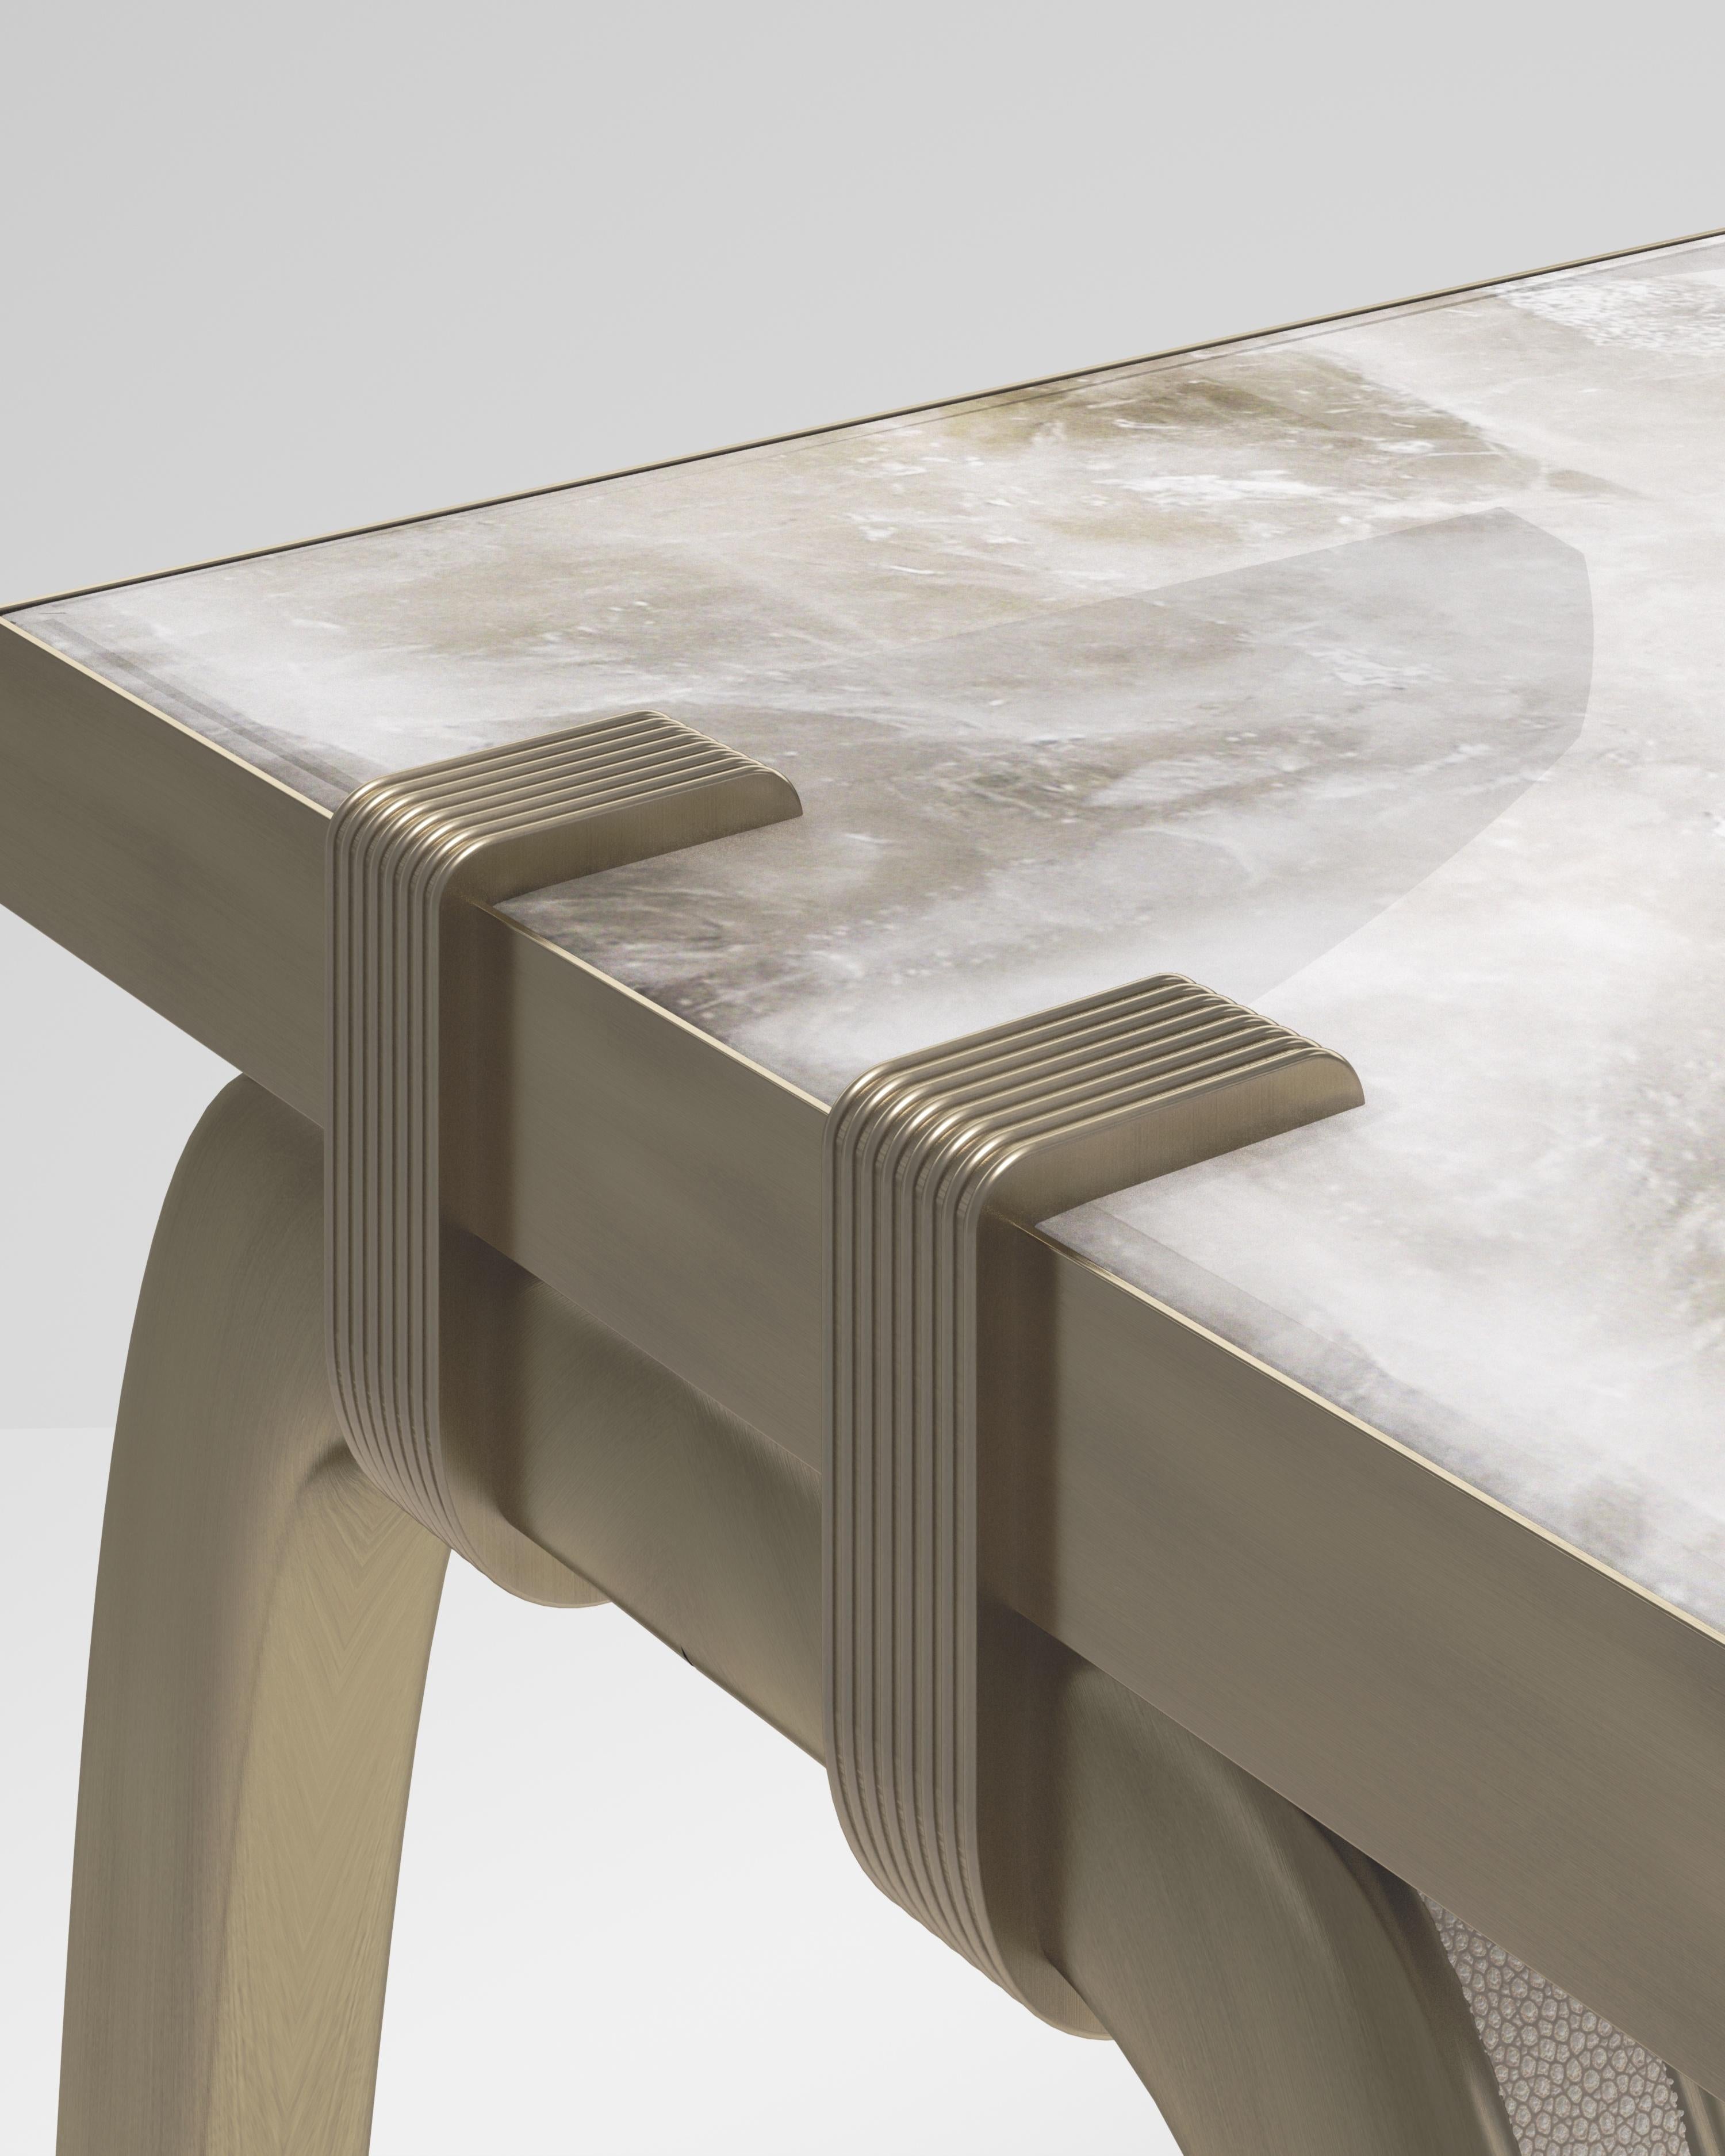 La table console Sonia est un modèle emblématique d'Augousti, qui met en valeur le savoir-faire artisanal de la marque. Les pieds incrustés de galuchat se fixent sur le côté du plateau rectangulaire en quartz. Cette pièce est un clin d'œil à la